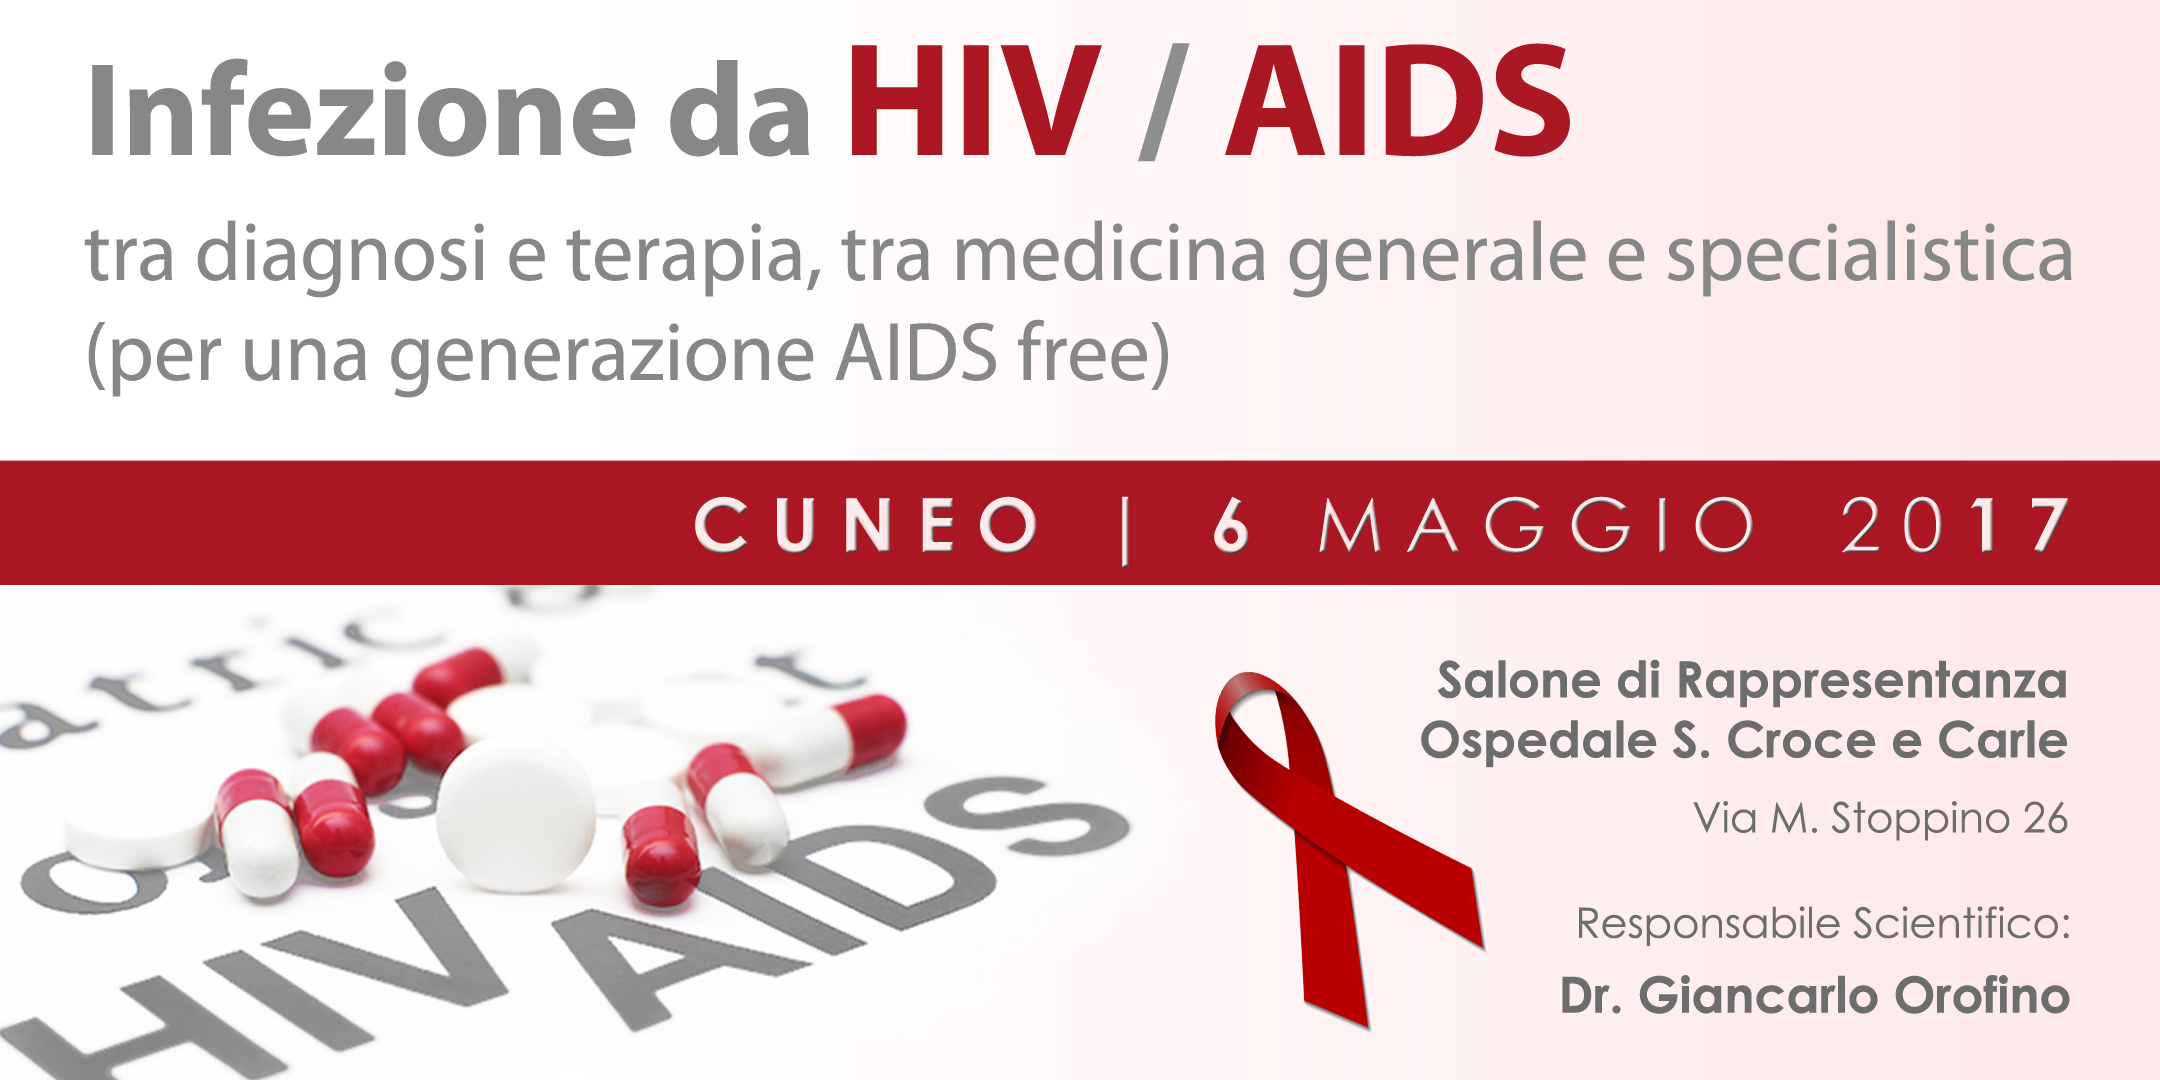 Infezione da HIV/AIDS (Cuneo) | Symposia ECM